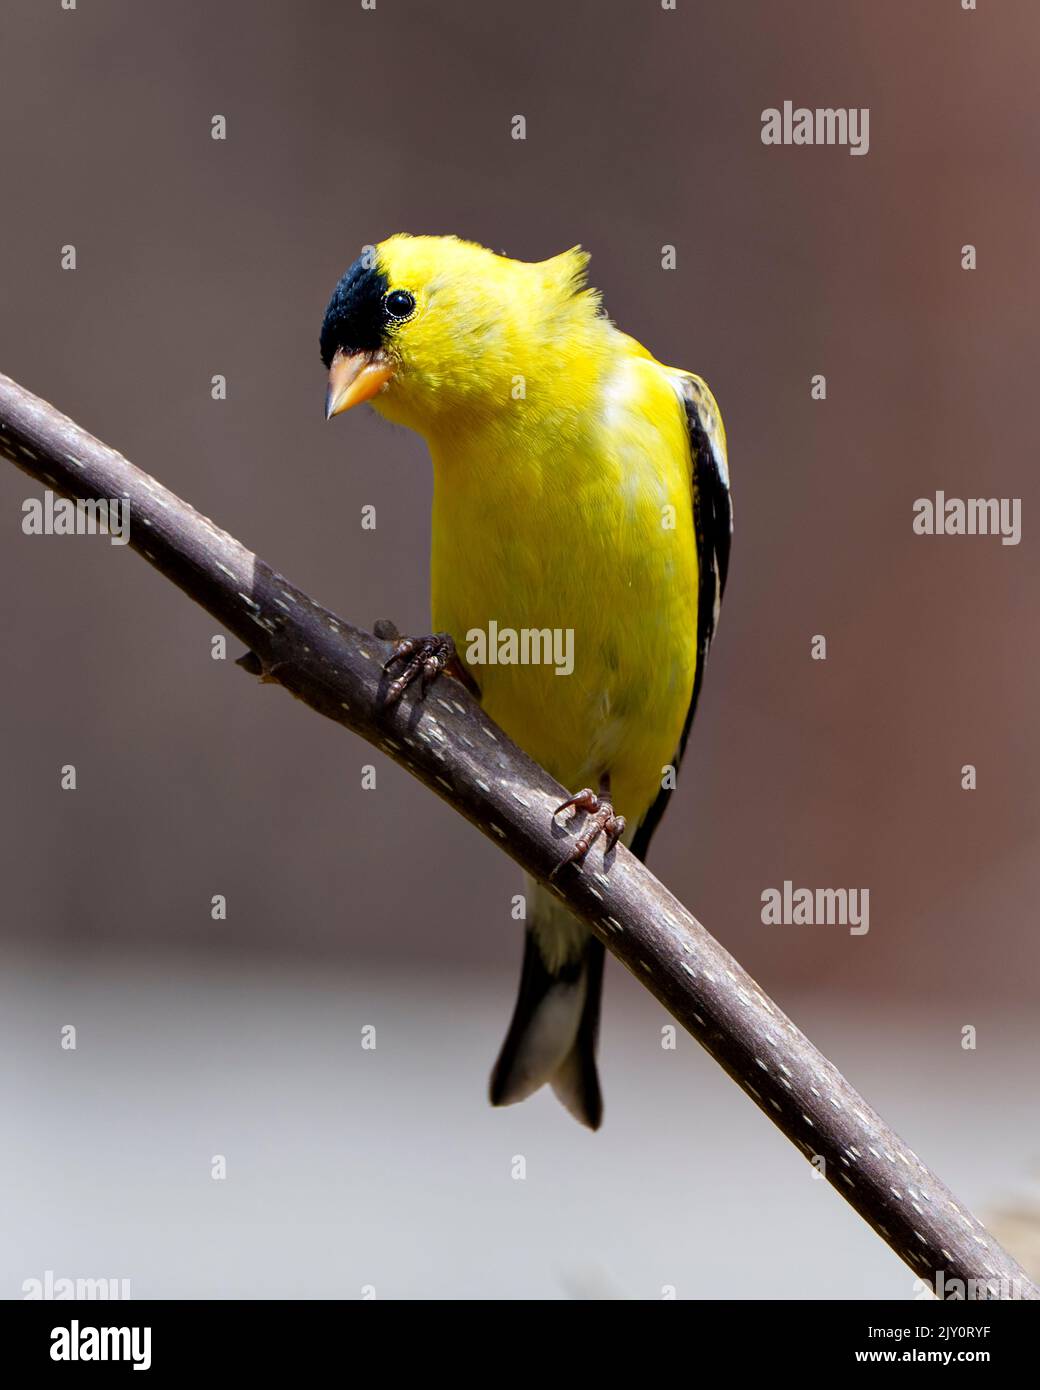 American Goldfinch Nahaufnahme Profil Ansicht, thront auf einem Zweig mit einem weichen Hintergrund in seiner Umgebung und Lebensraum und zeigt gelbe Federn. Stockfoto